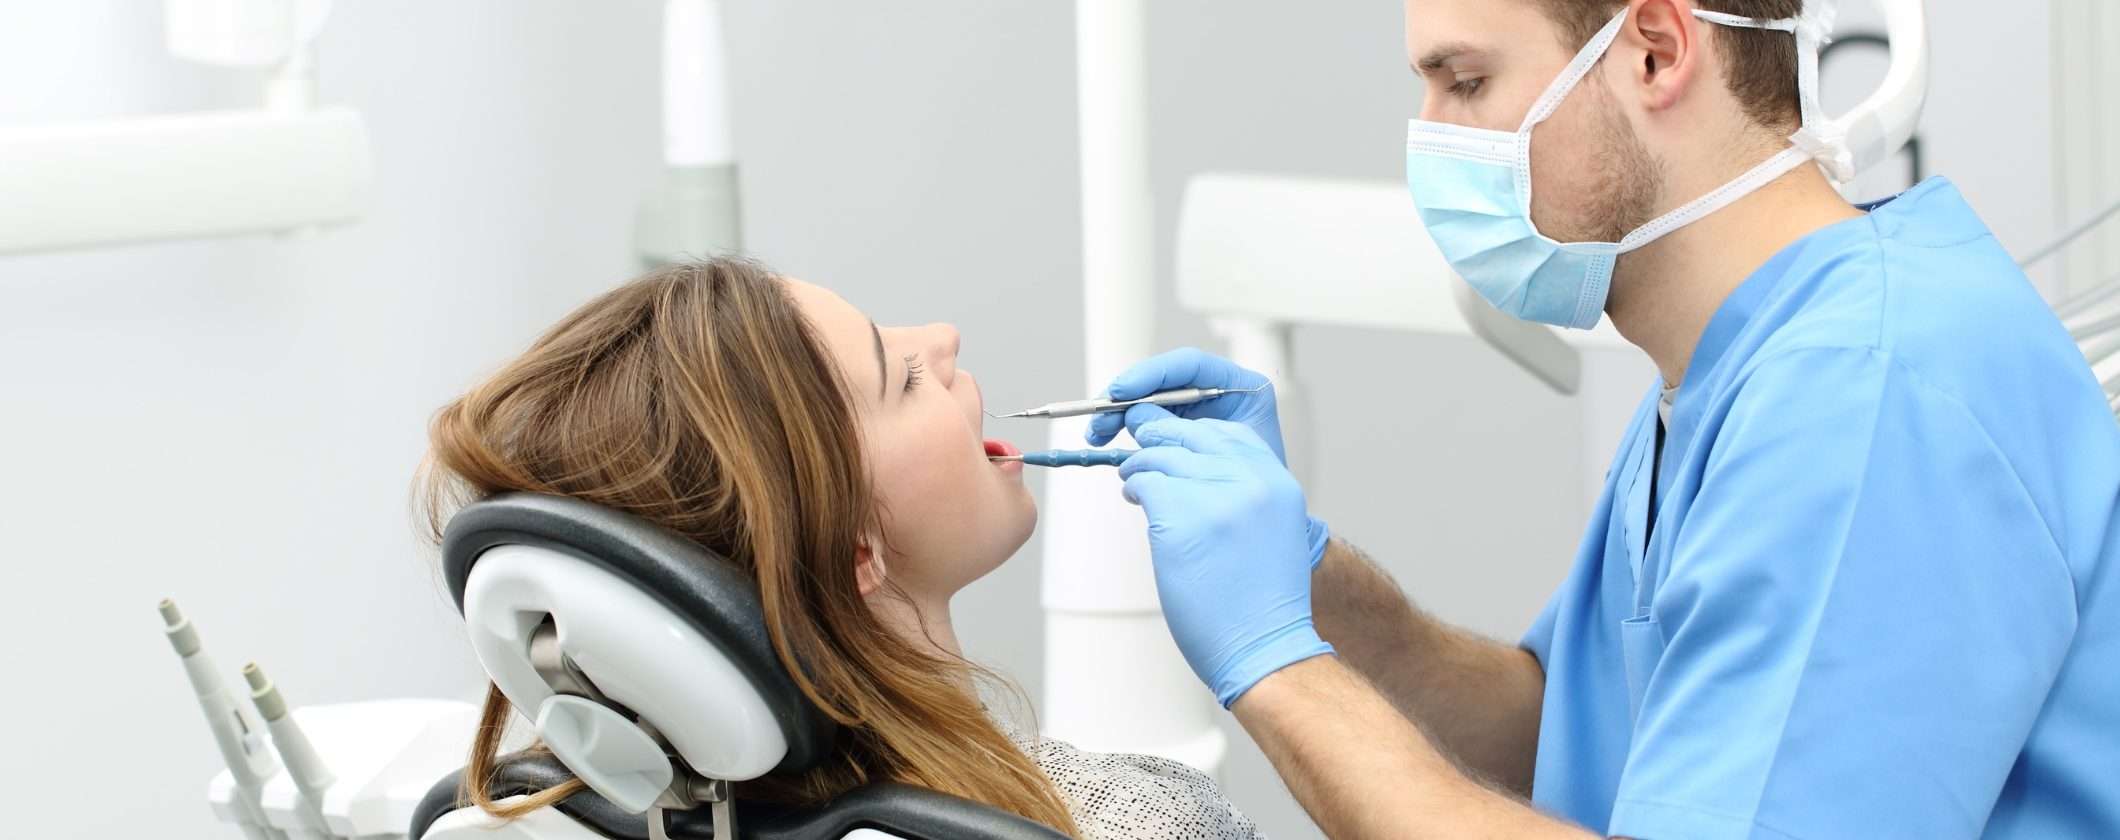 Dentista (quasi) a COSTO ZERO con UniSalute